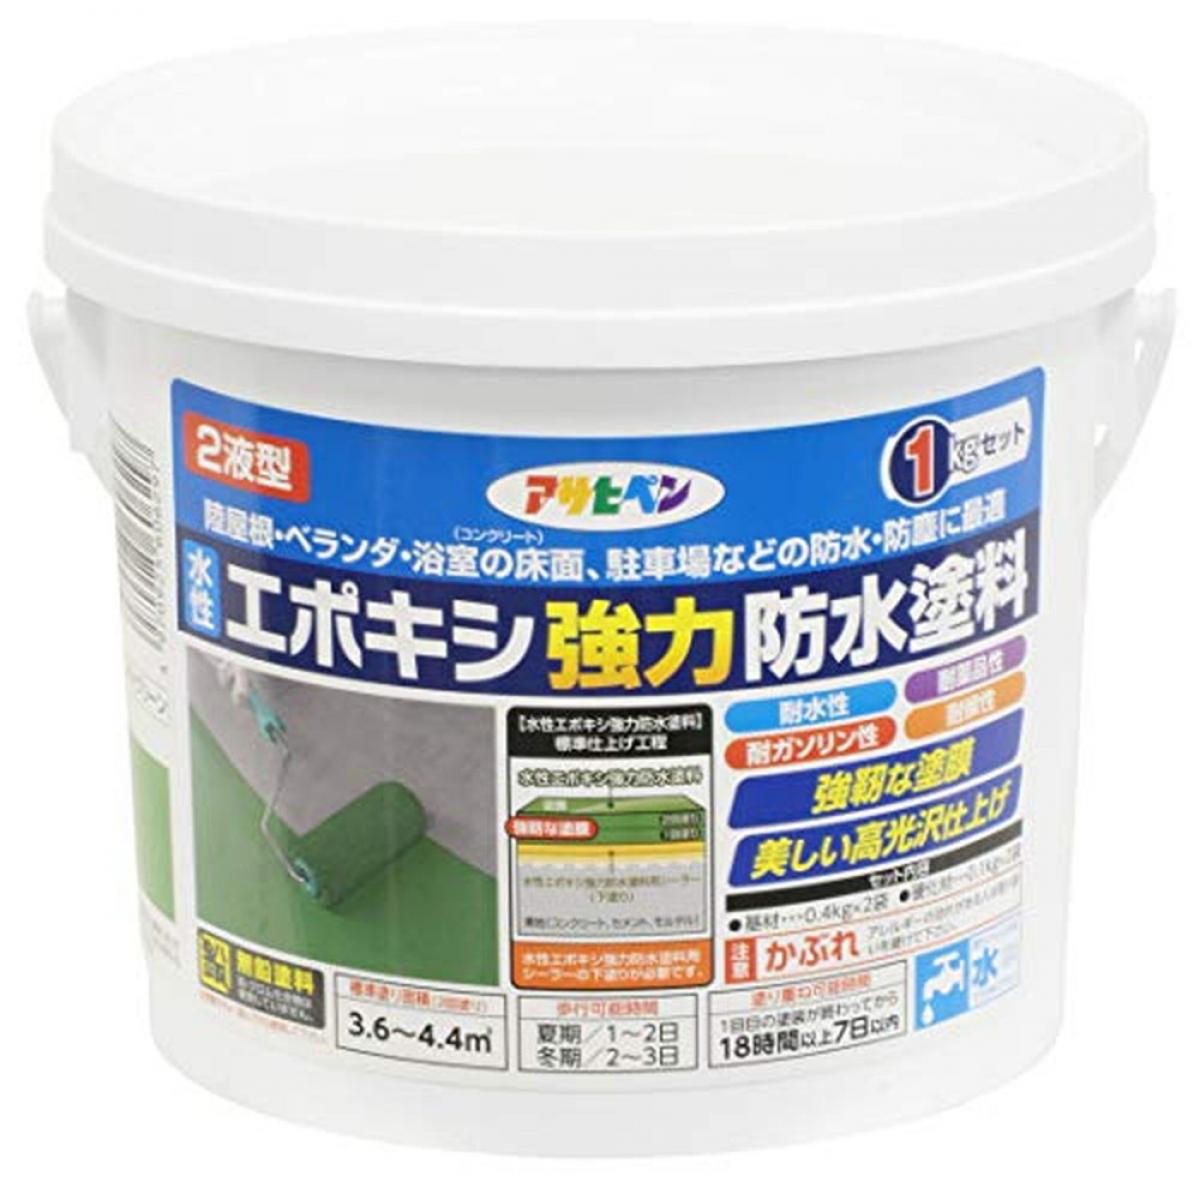 アサヒペン(Asahipen) 防水塗料 水性エポキシ強力防水塗料 1kg ライトグリーン